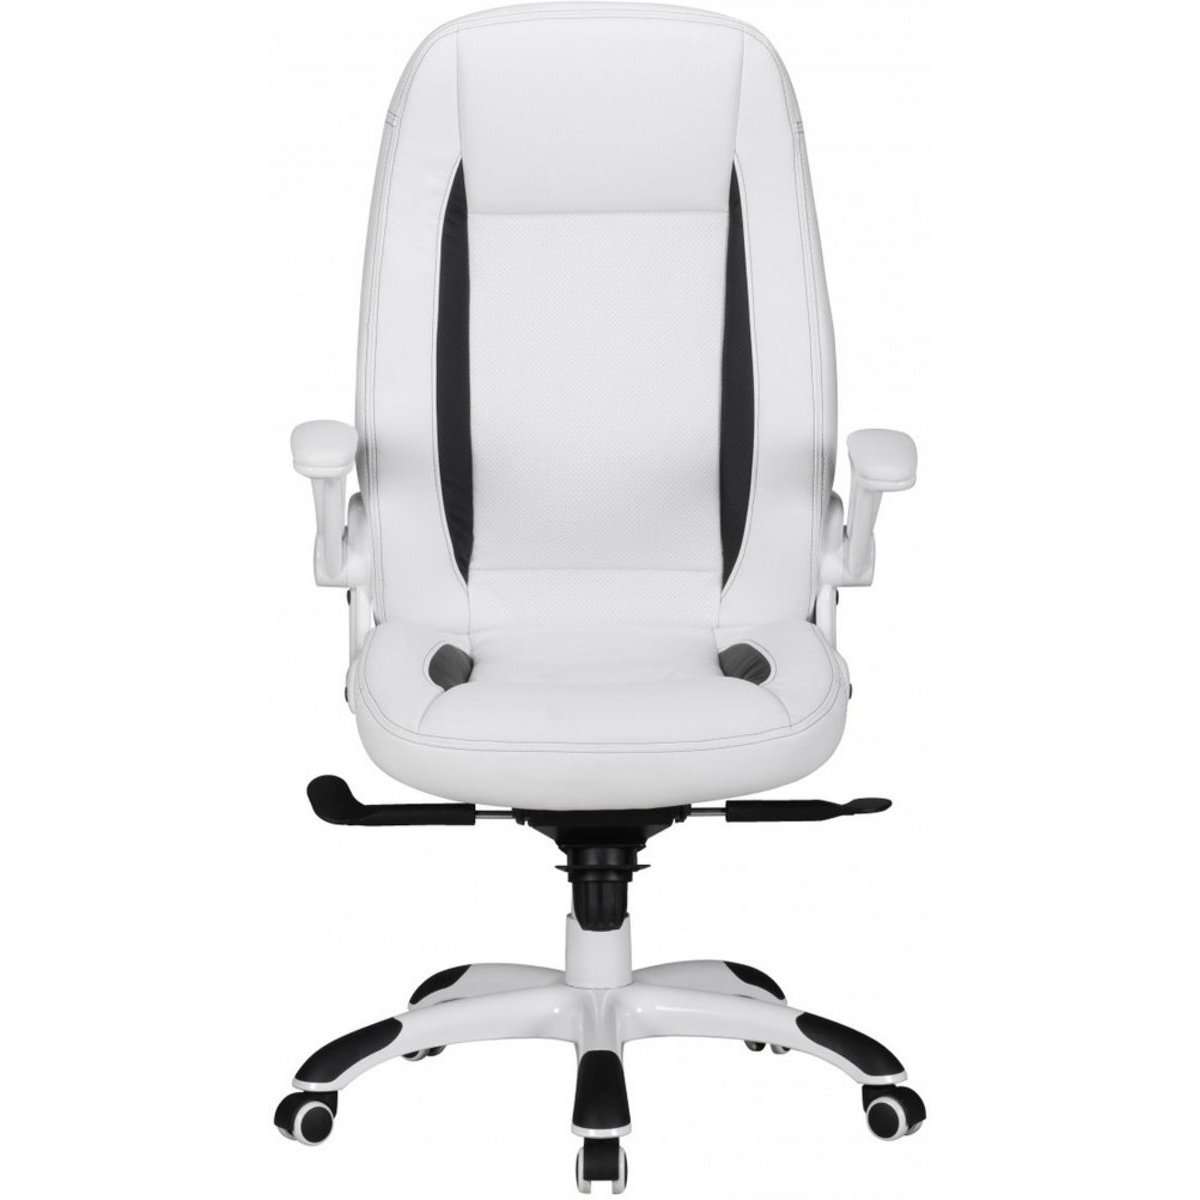 Chaise de bureau Nancy's New York - Chaise de bureau ergonomique - Chaises de bureau pour adultes